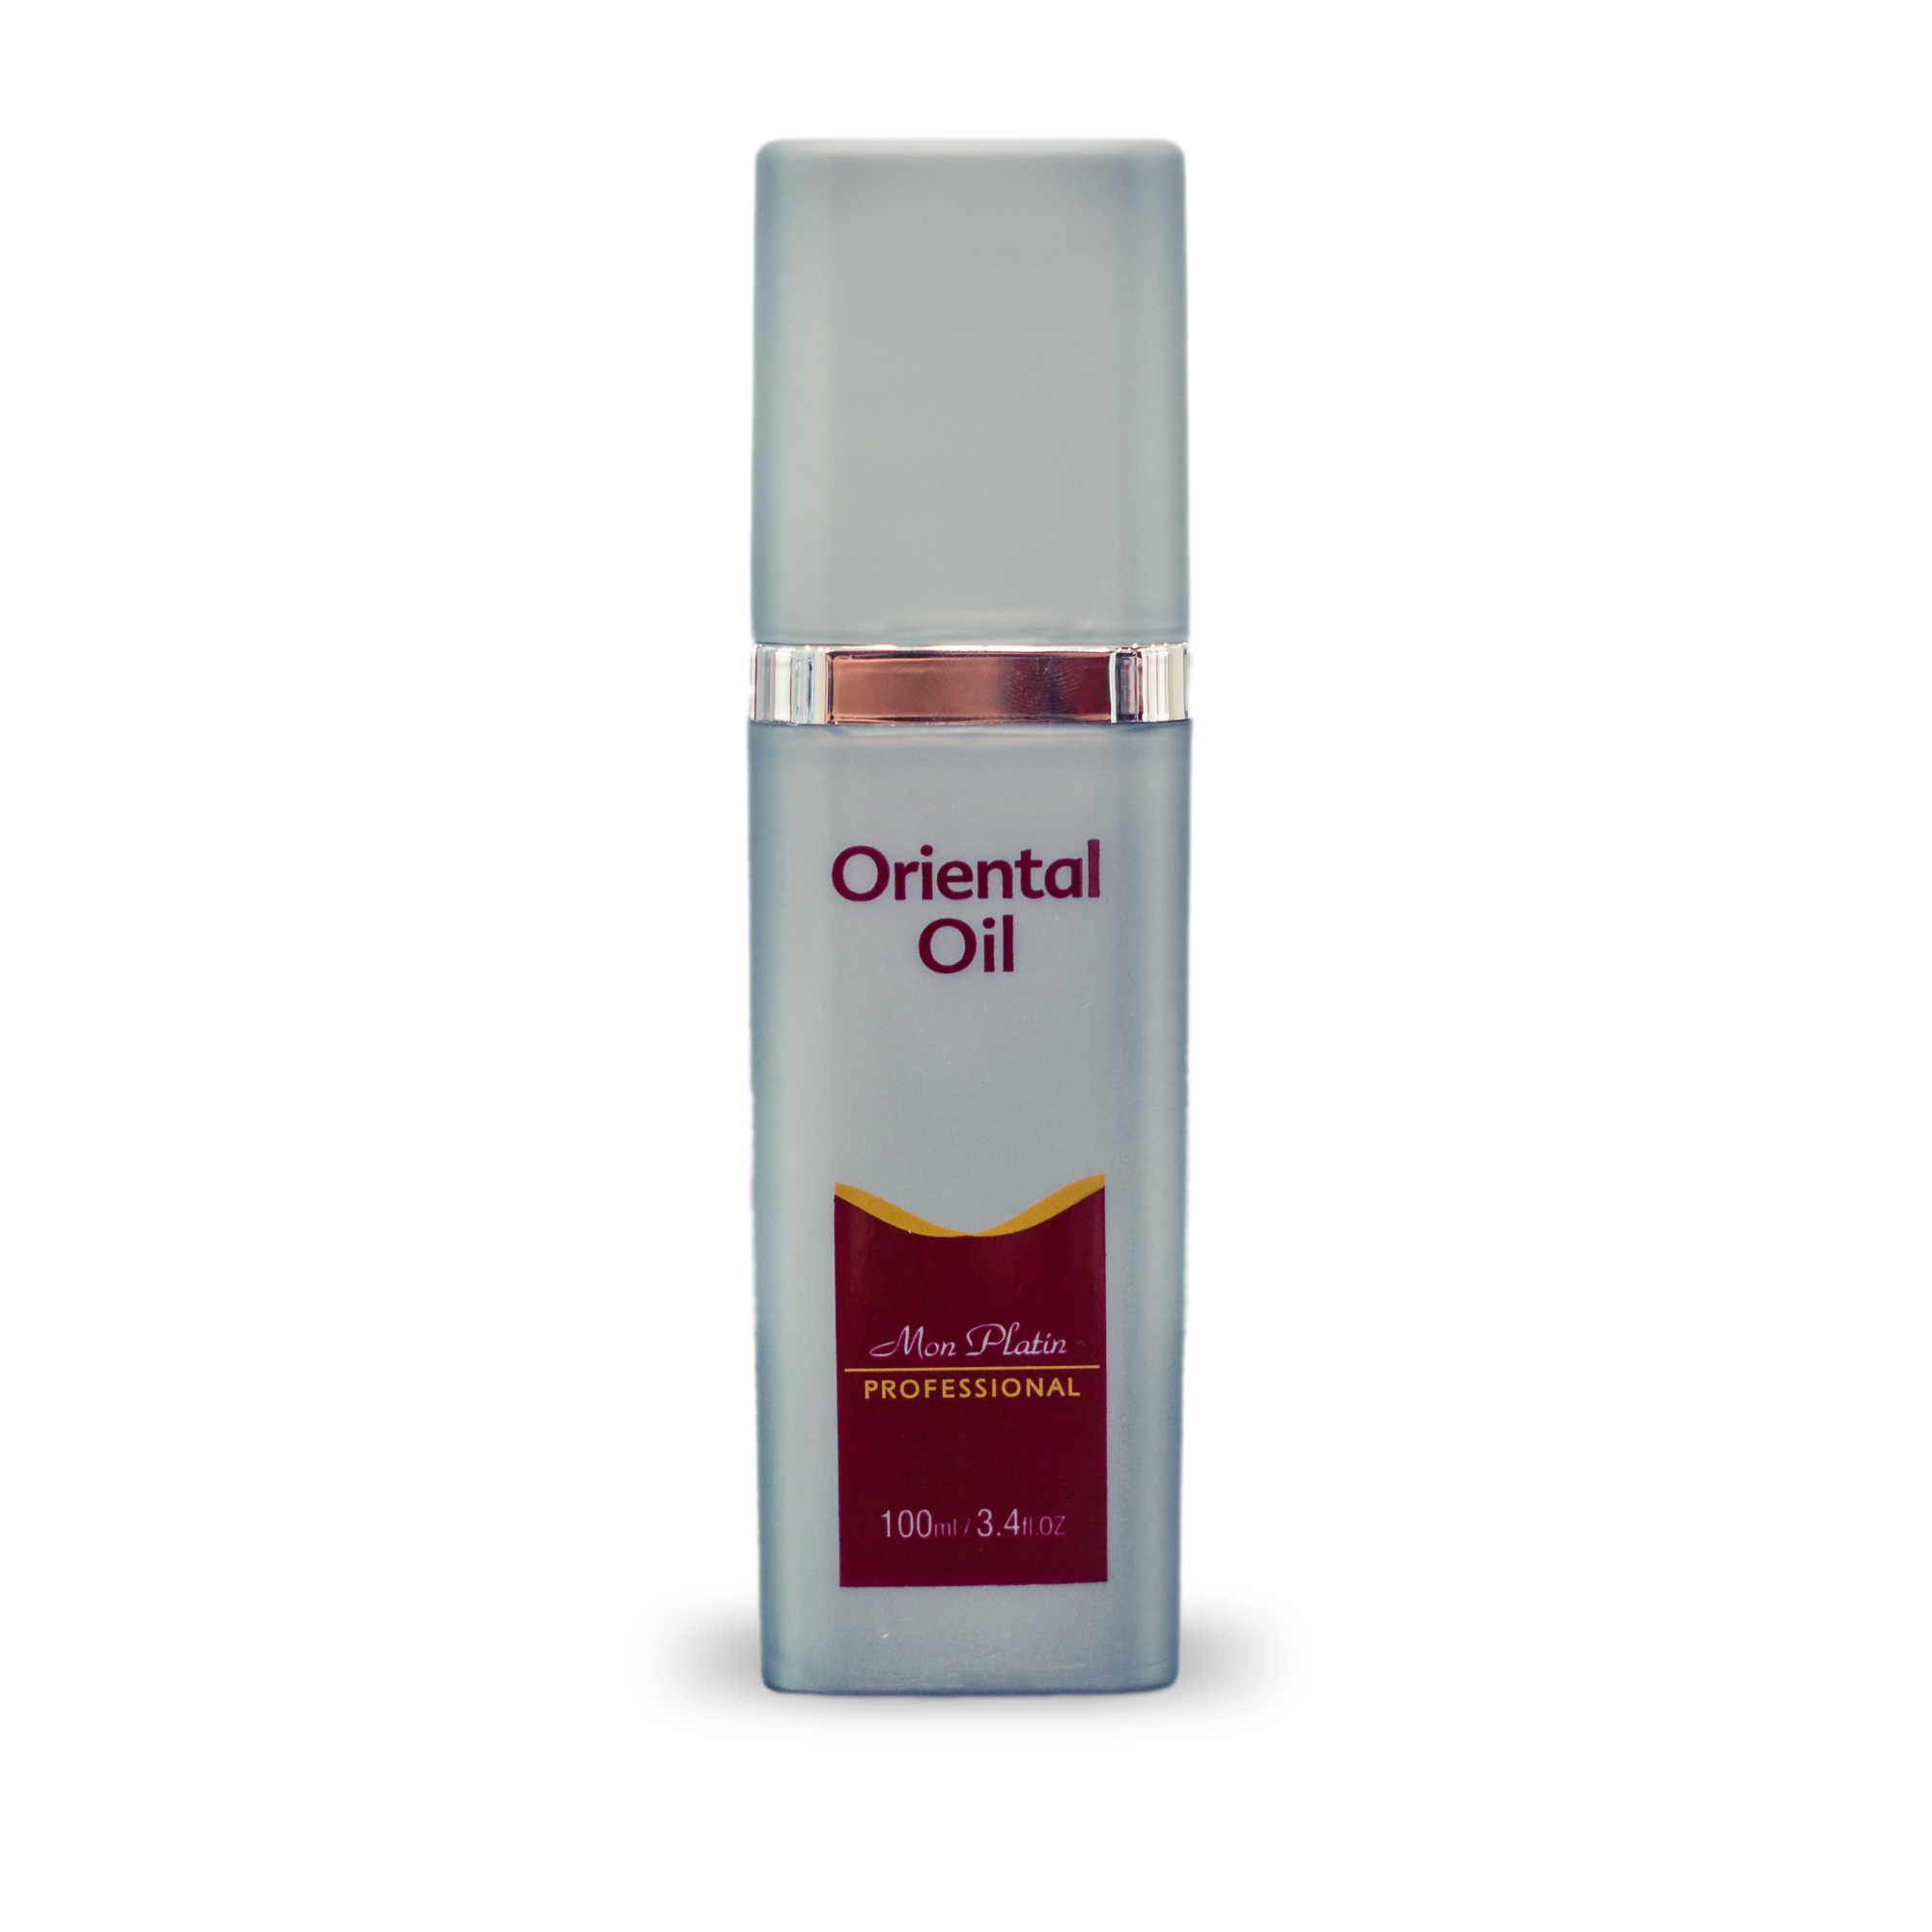 Восточное масло Mon Platin для питания и блеска волос Professional Oriental Oil, 100 мл